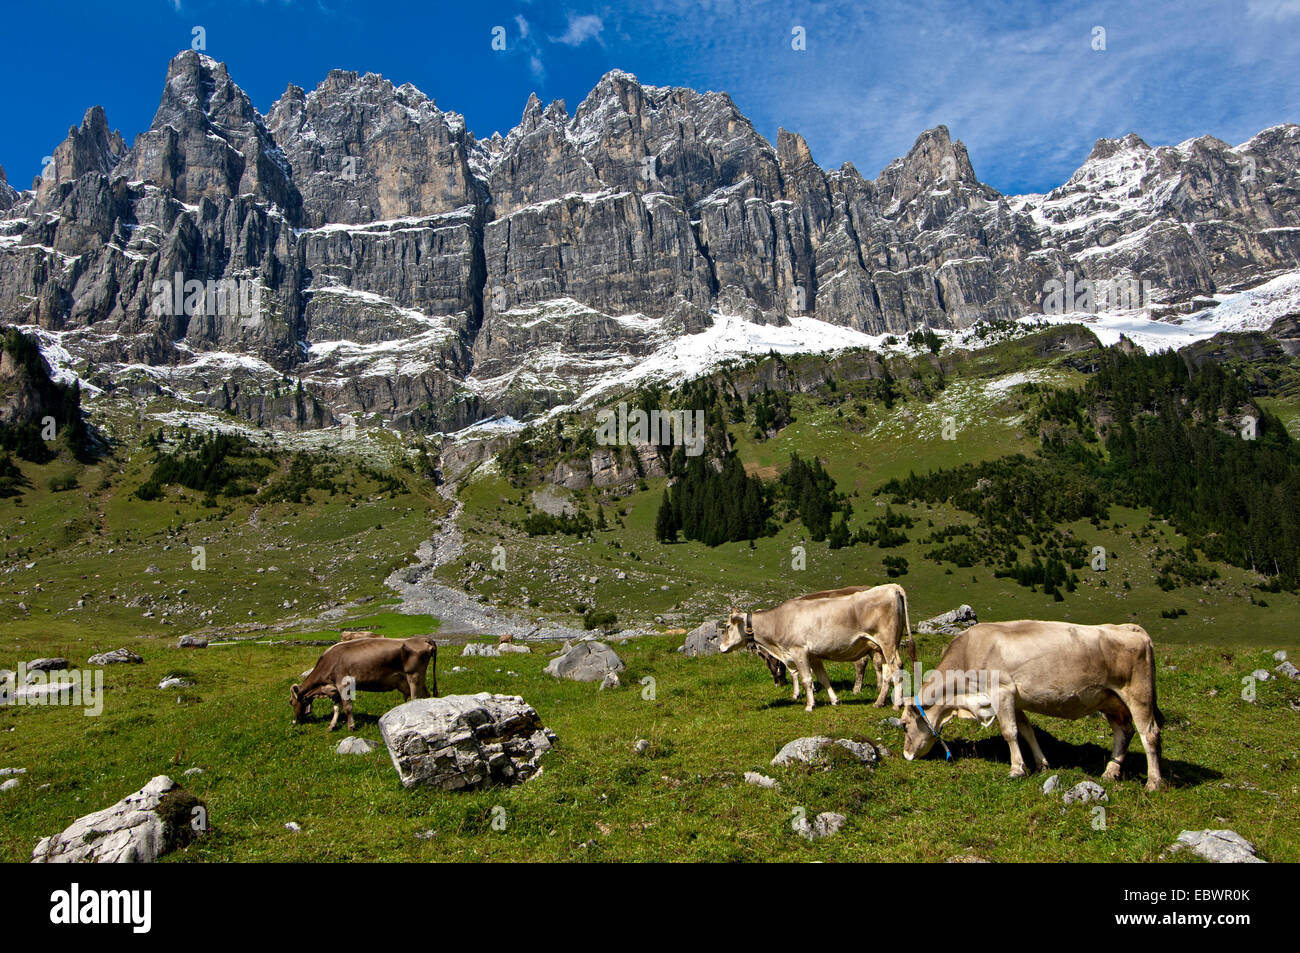 Cattle grazing on the summer pasture in the mountains, Urner Boden Alp, Urnerboden, Spiringen, Canton of Uri, Switzerland Stock Photo